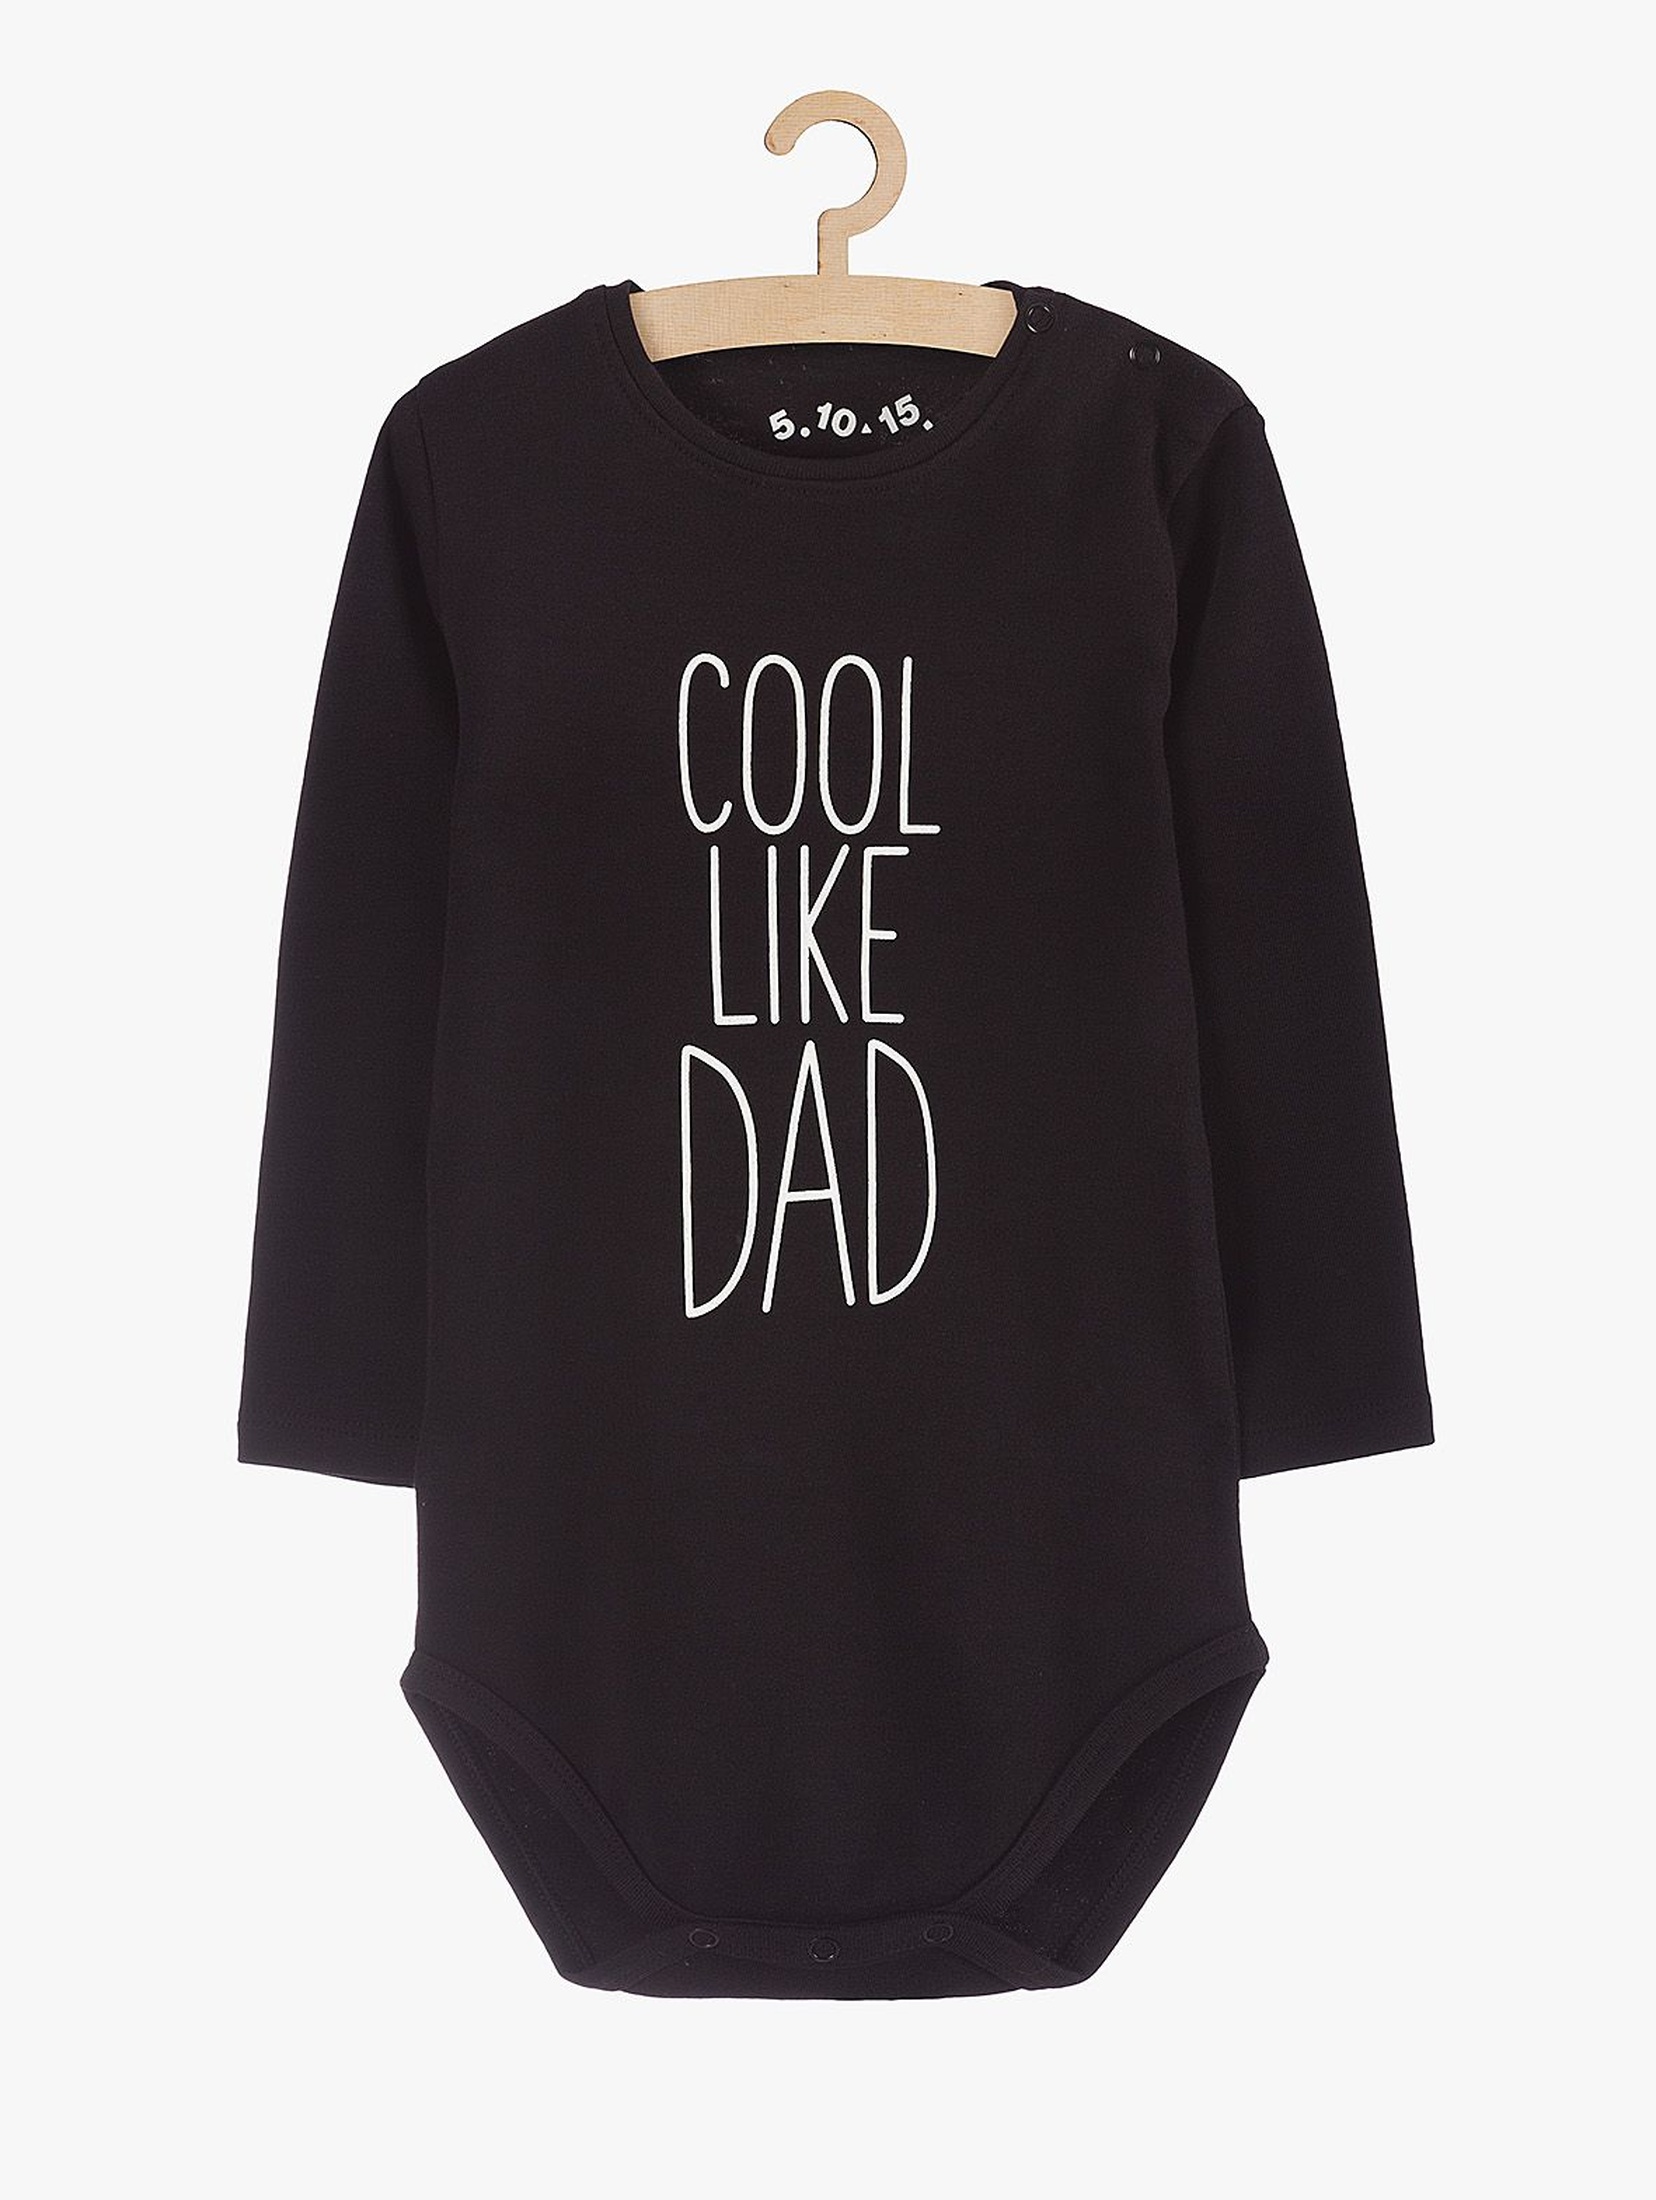 Body niemowlęce czarne z napisem "Cool like dad"